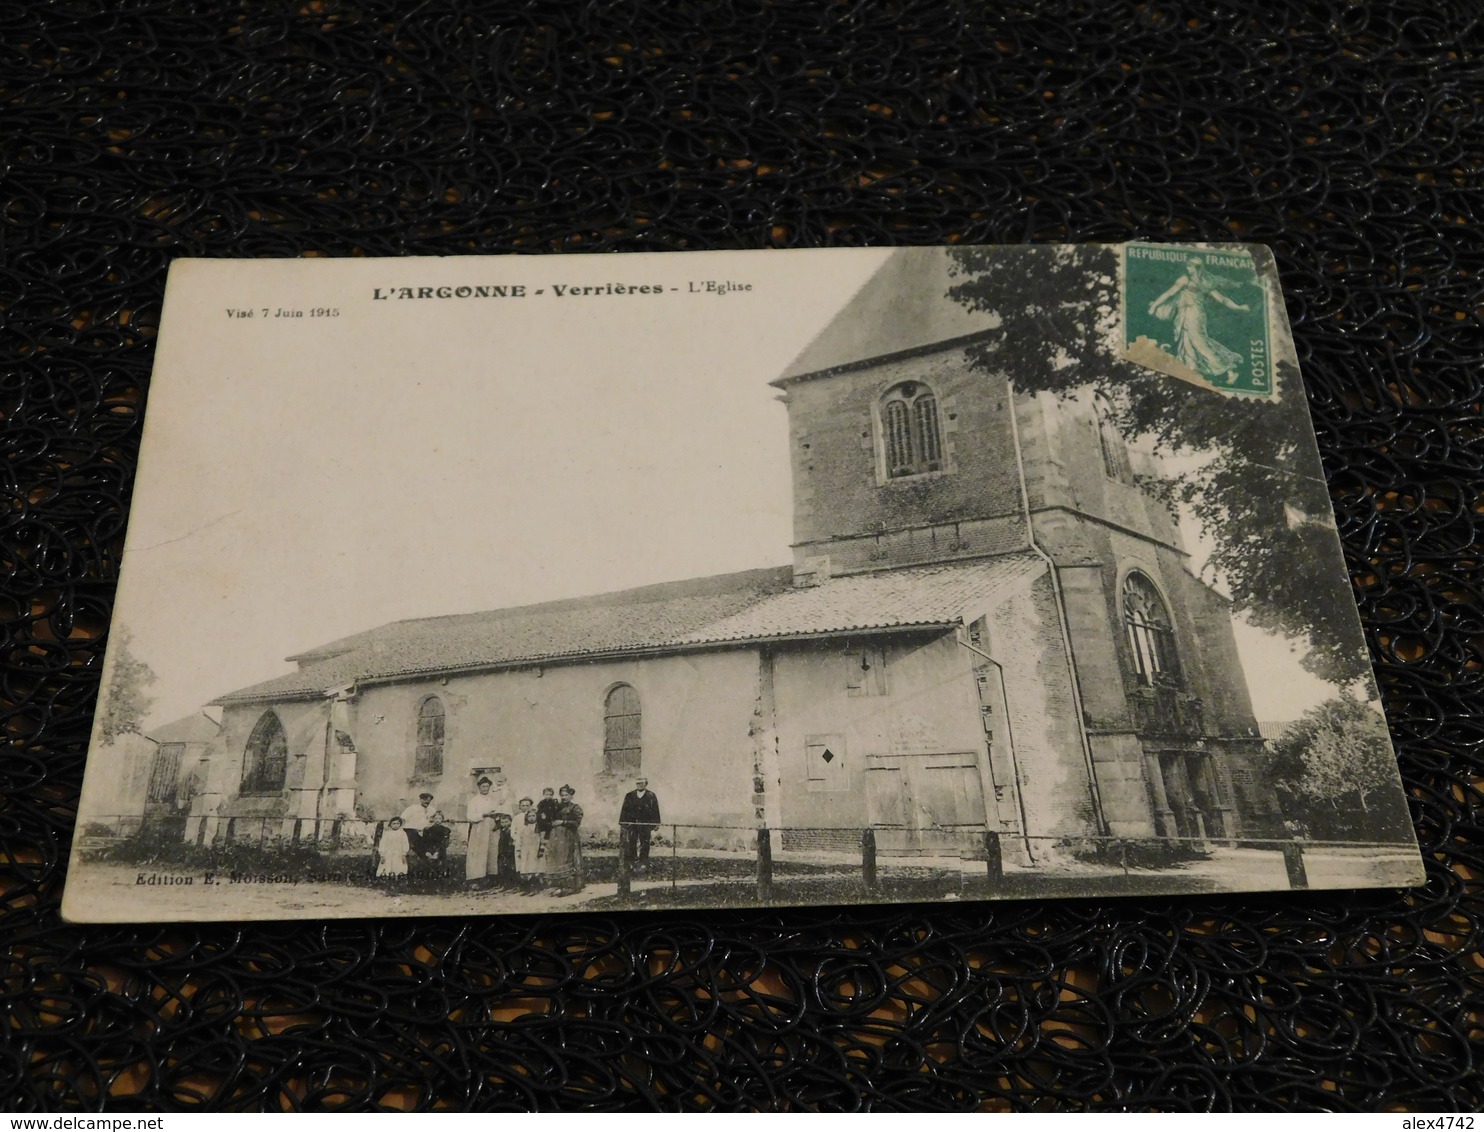 L'Argonne - Verrières, L'église (Visé 7 Juin 1915) (N5) - Ville-sur-Tourbe